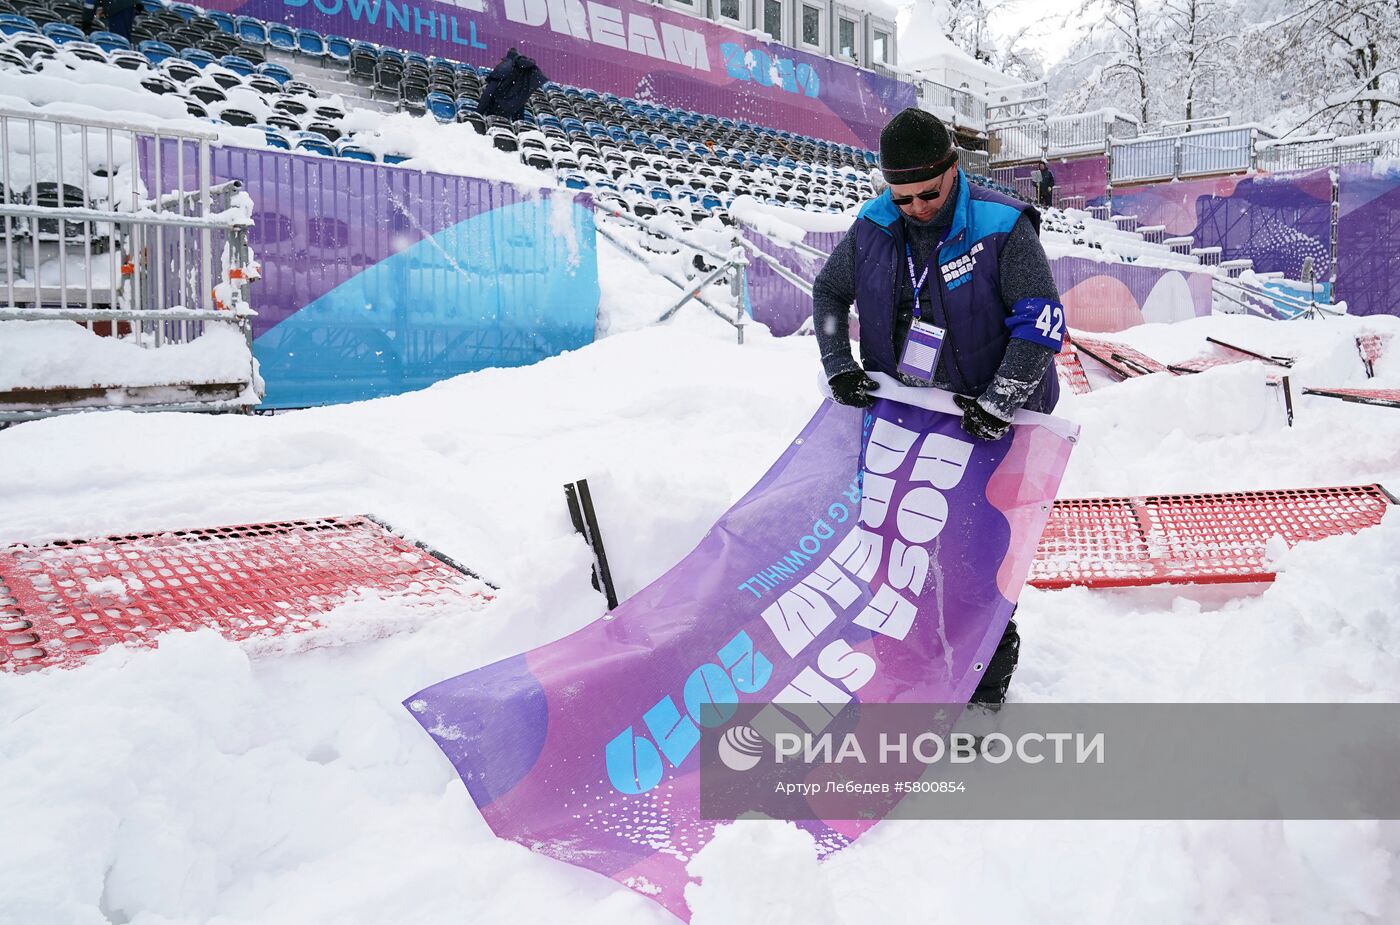 Этап КМ по горнолыжному спорту в Сочи отменен